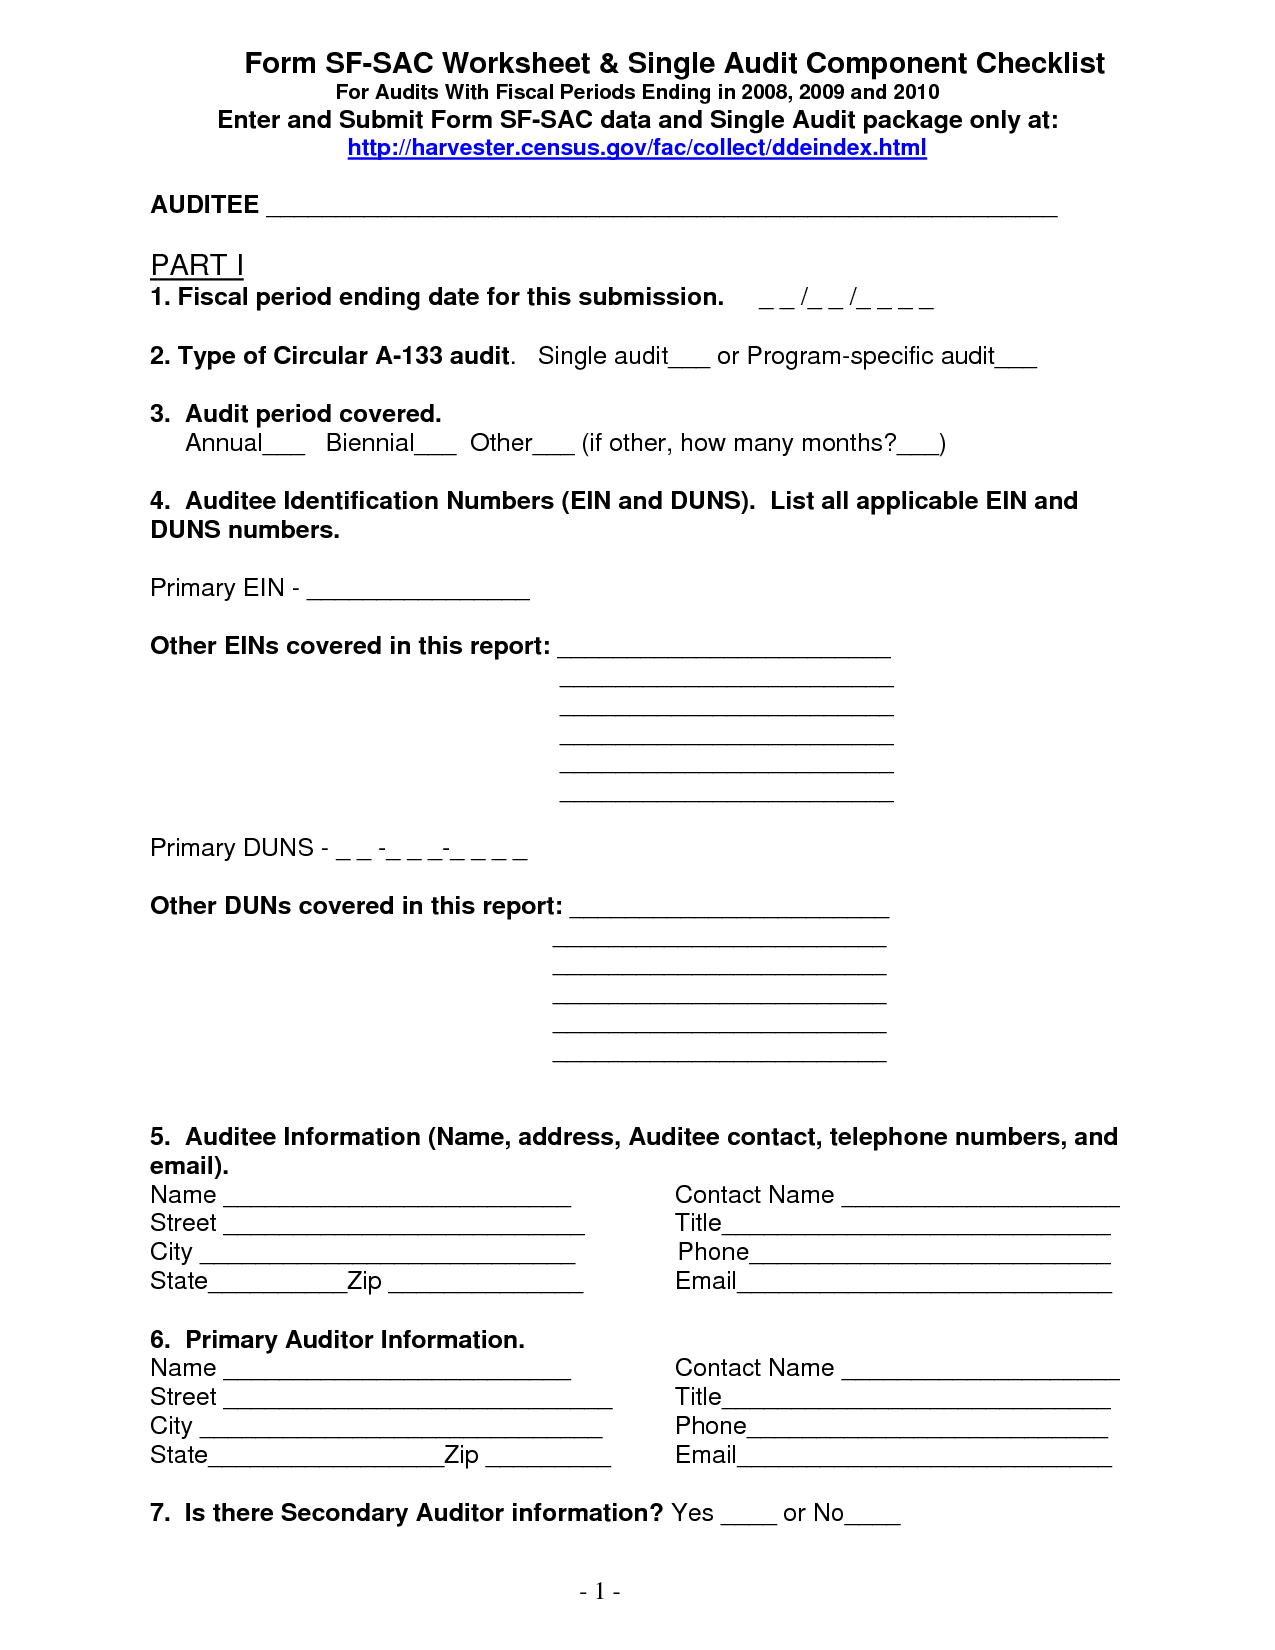 Checklist Audit Worksheet Samples Image